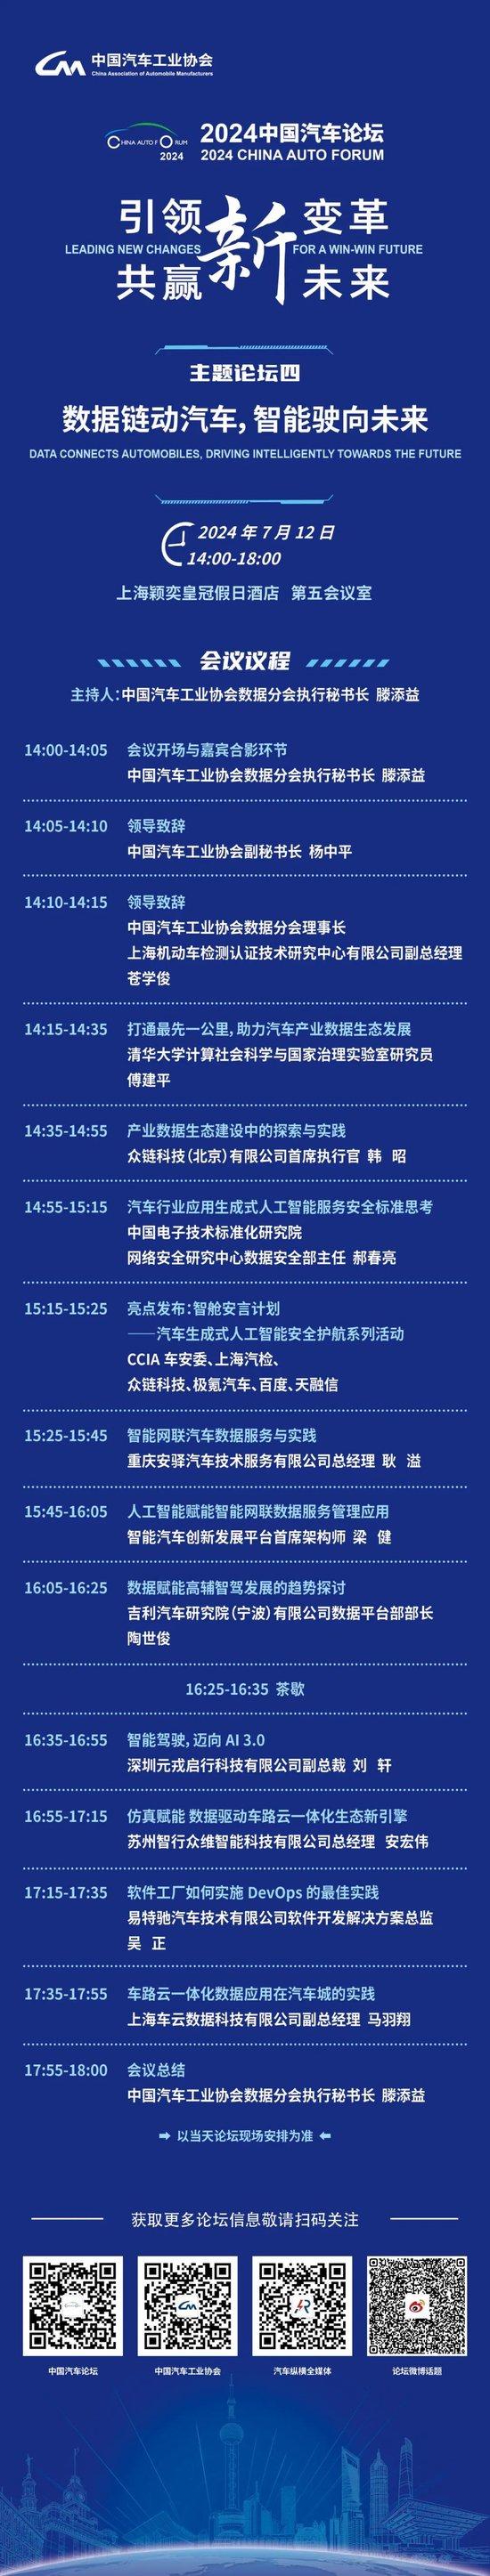 定档！2024中国汽车论坛详细会议日程发布